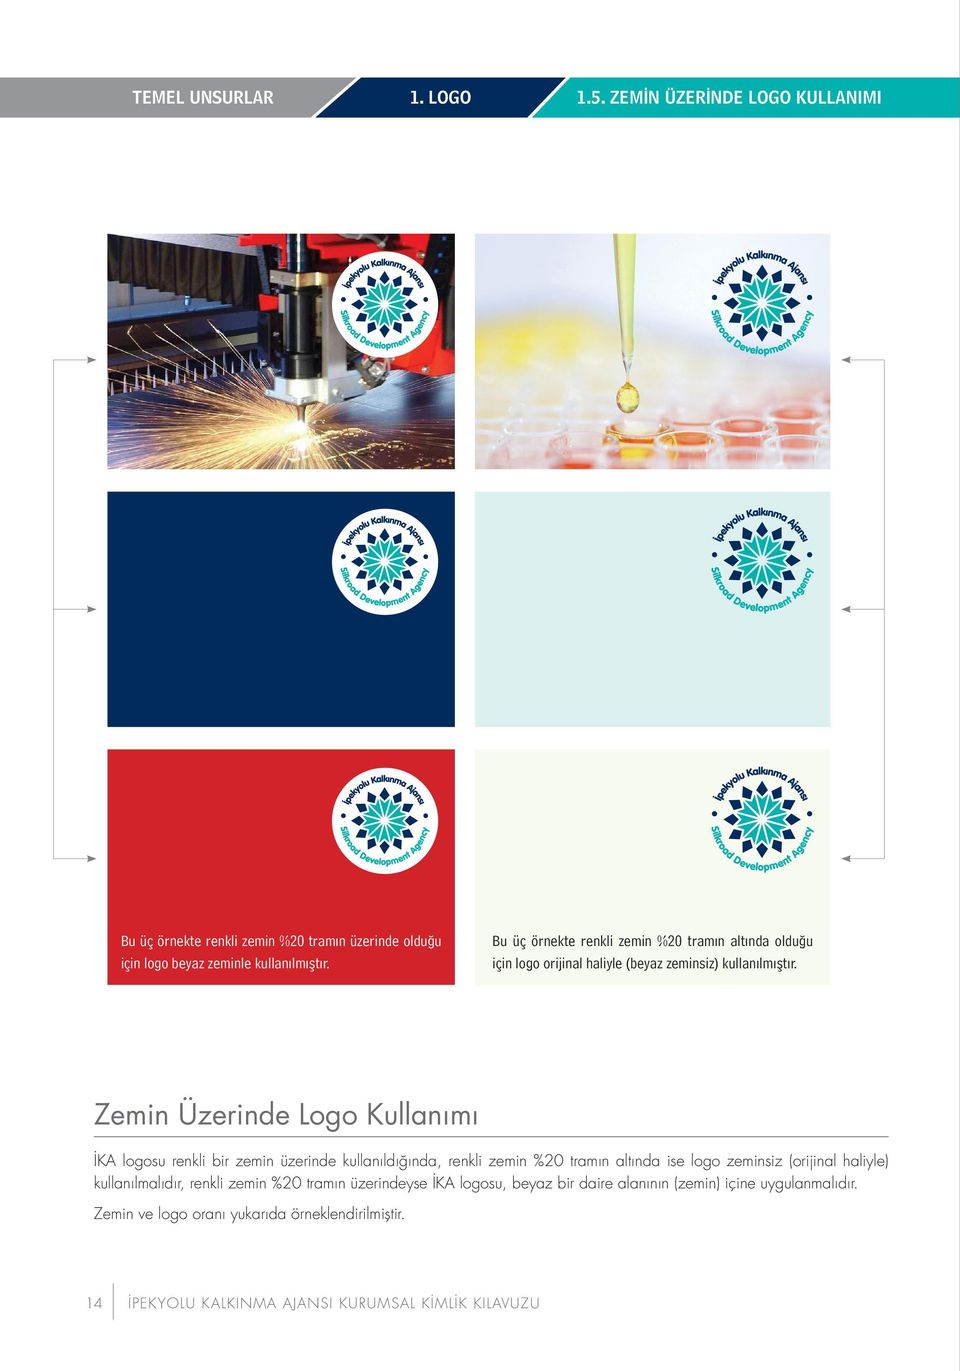 Zemin Üzerinde Logo Kullanımı İKA logosu renkli bir zemin üzerinde kullanıldığında, renkli zemin %20 tramın altında ise logo zeminsiz (orijinal haliyle)